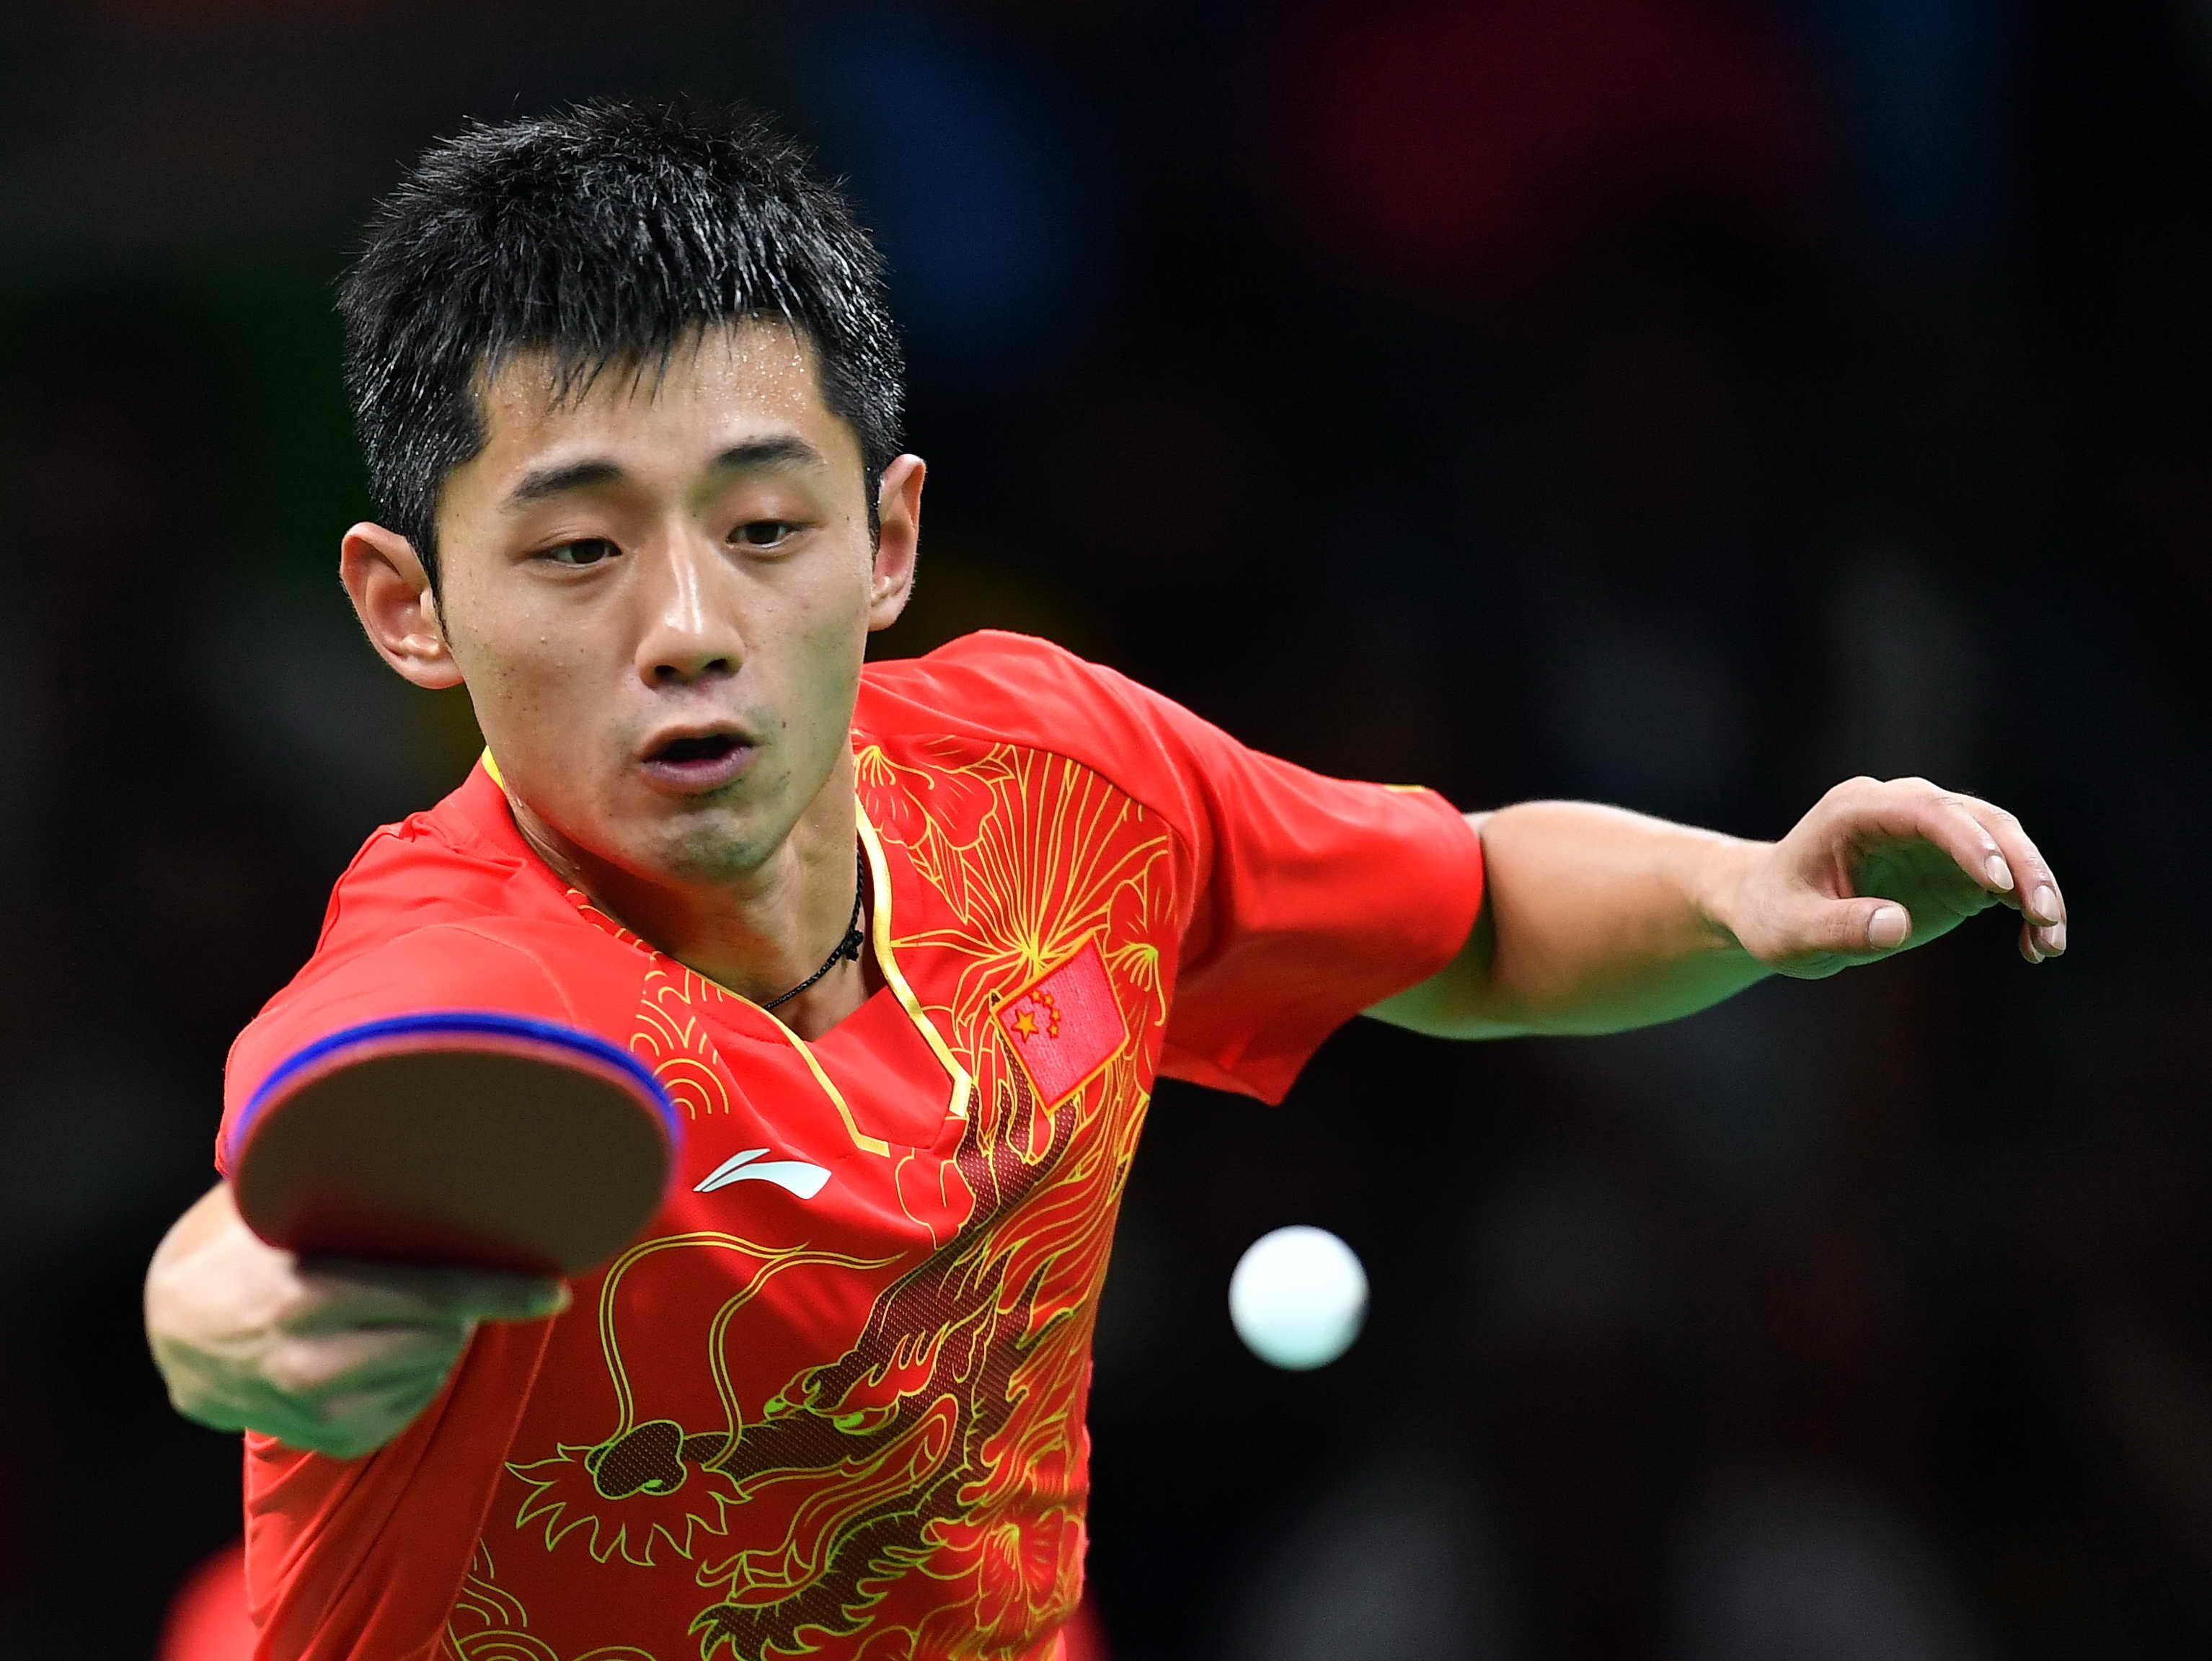 第四局,丹羽孝希调整状态,加大攻势,在5:7领先后,中国男子乒乓球队总